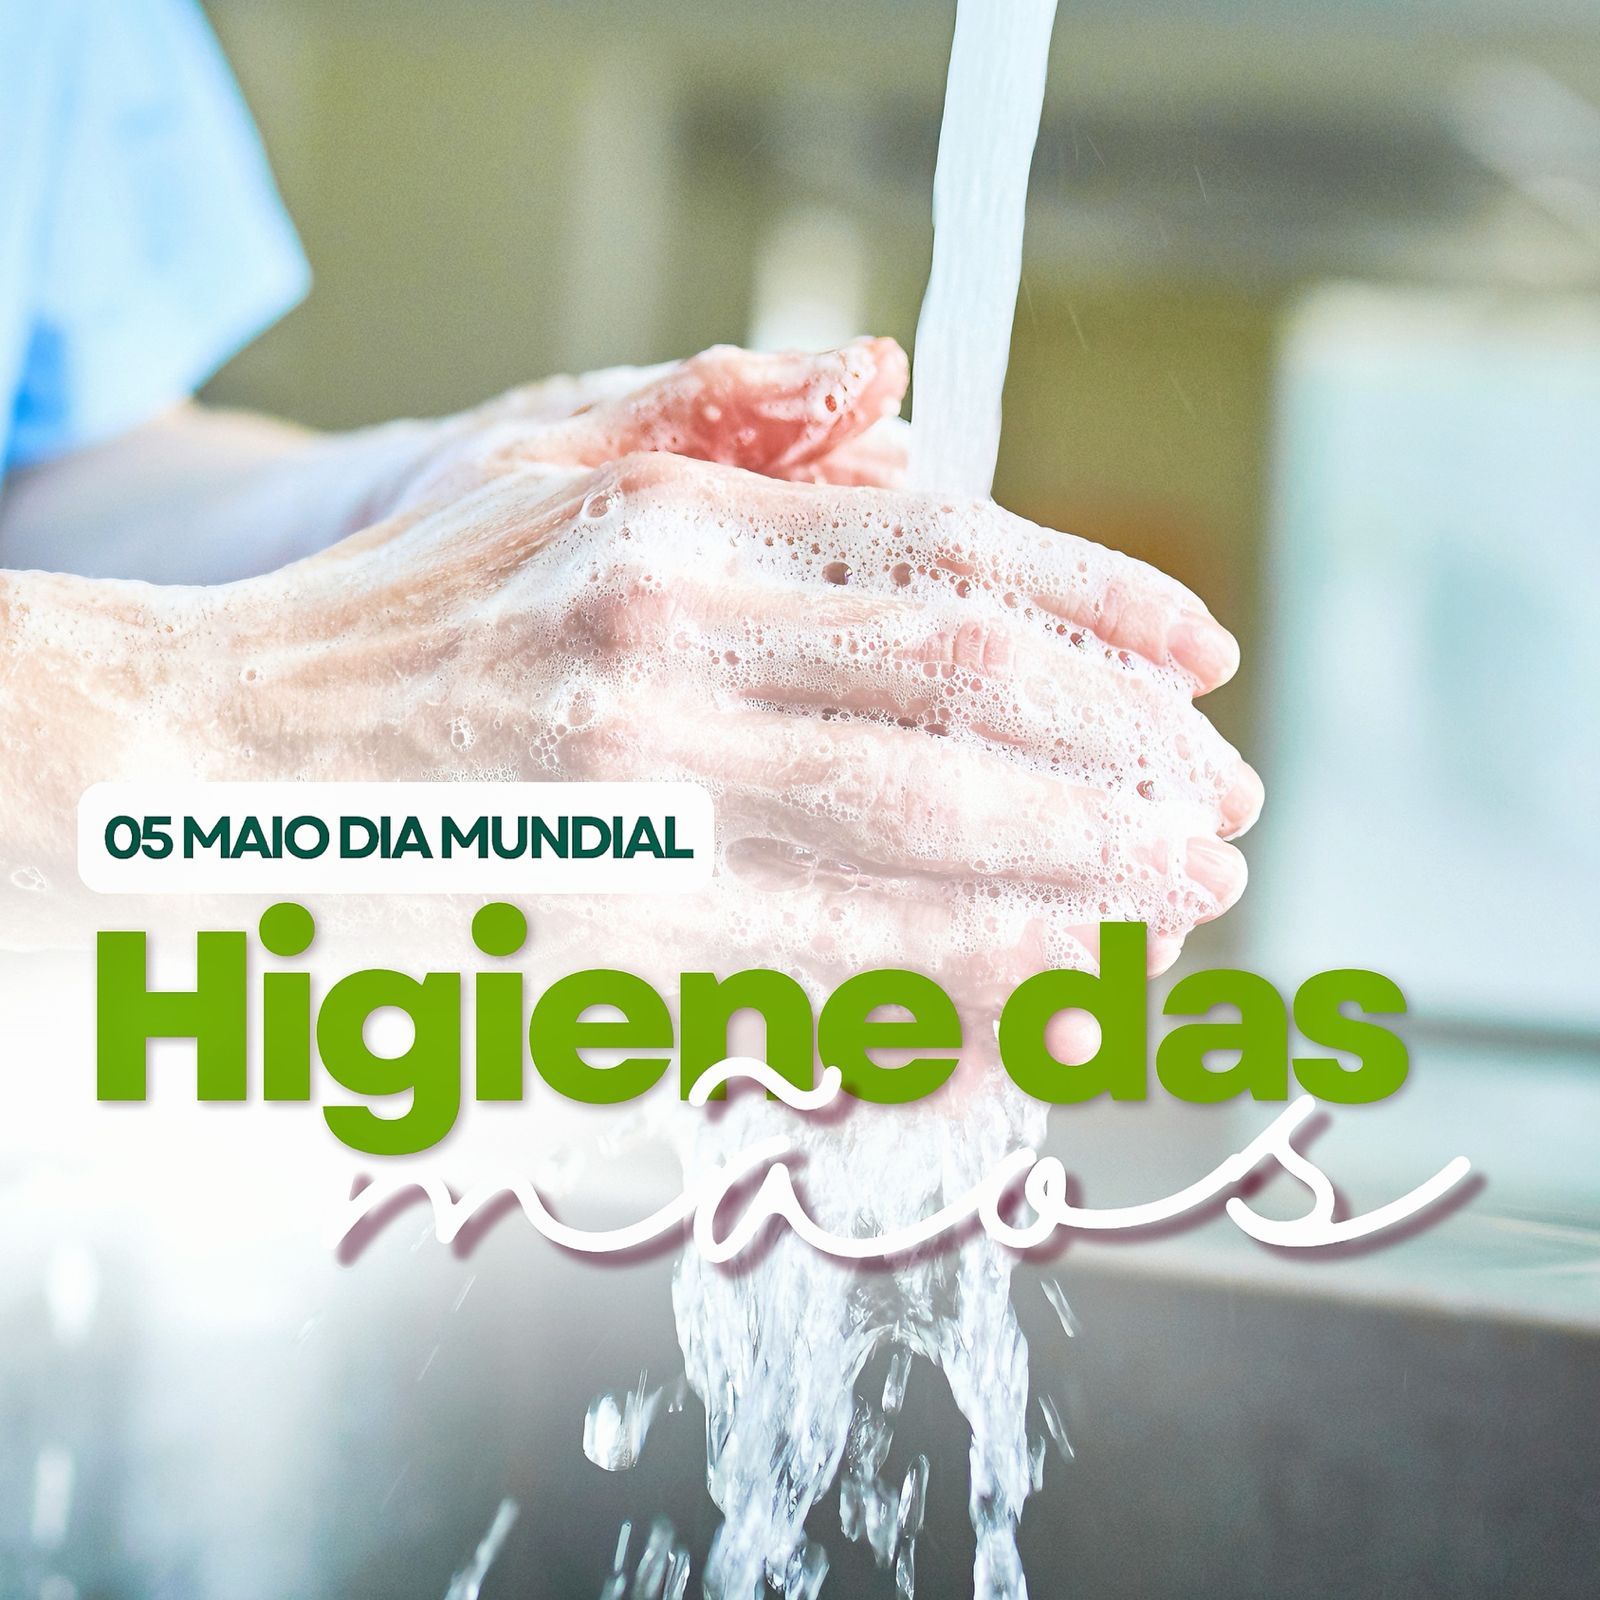 Hoje dia 05 de maio, é o dia mundial da higiene de mãos, iniciativa da OMS que destaca a importância crucial da higiene de mãos no cuidado à saúde, além de unir esforços para a melhoria das práticas em todo o mundo.